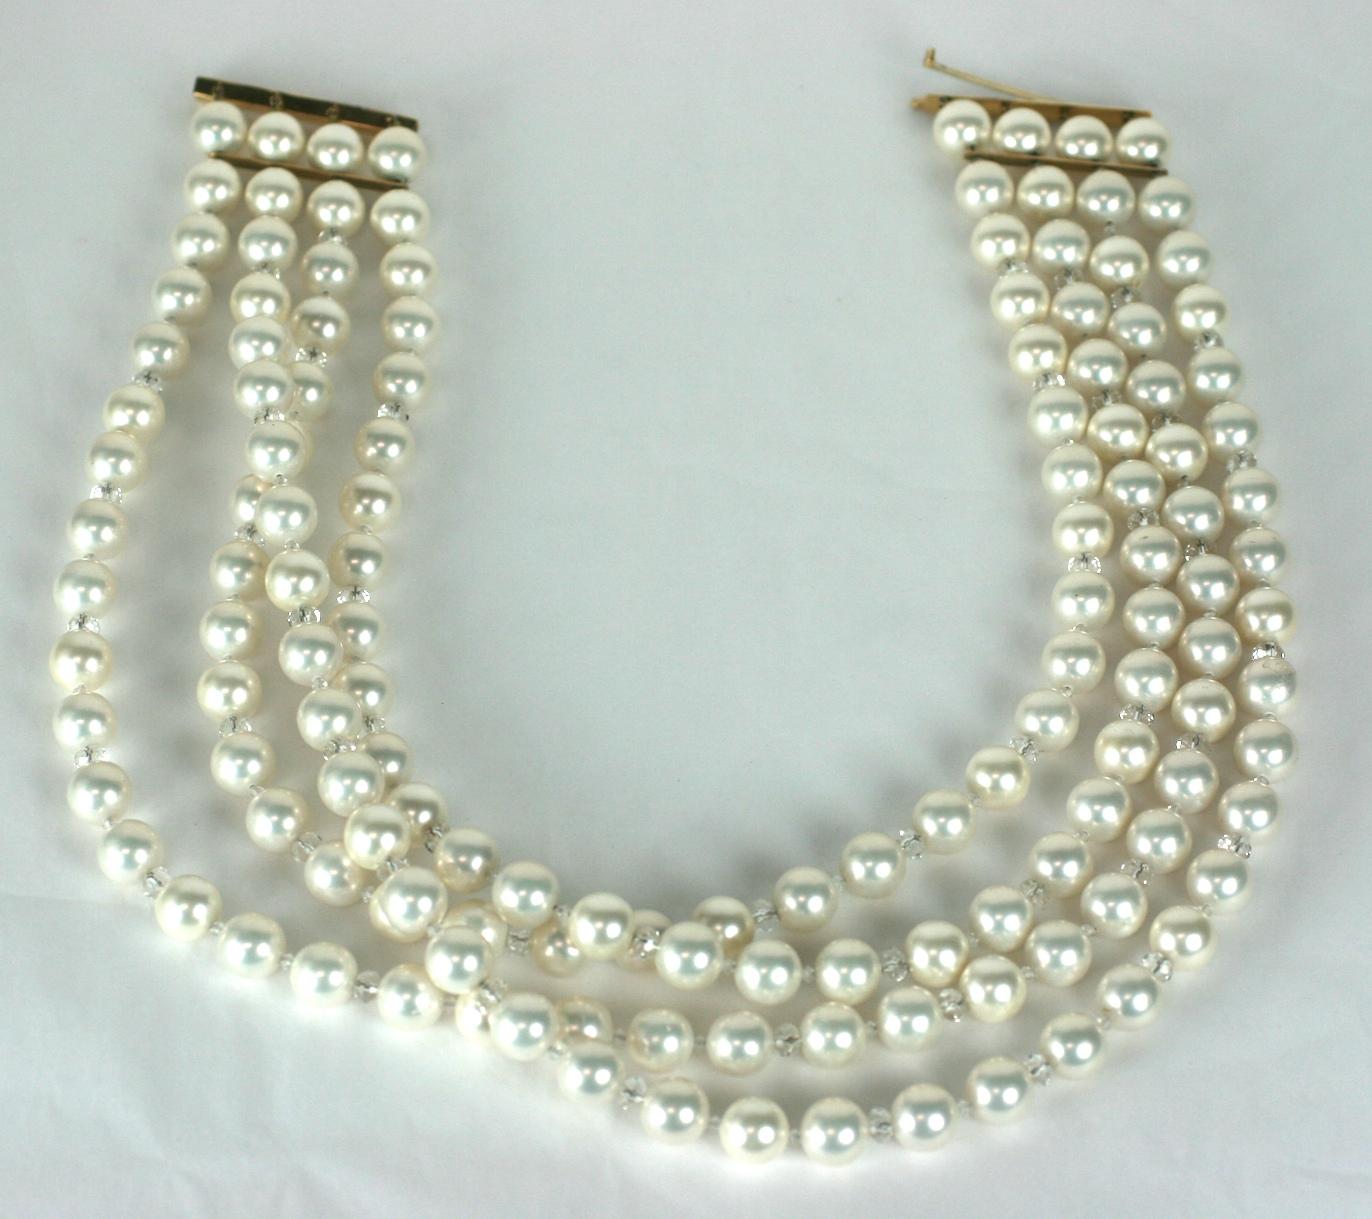 Übergroßes Halsband aus Kunstperlen und Gold aus den 1980er Jahren. Maßgefertigte Halskette mit 4 Strängen aus übergroßen 10 mm Kunstperlen (die ziemlich schwer sind, da sie wahrscheinlich Perlmuttperlen mit einer Perlmuttschicht sind).
Diese Perlen